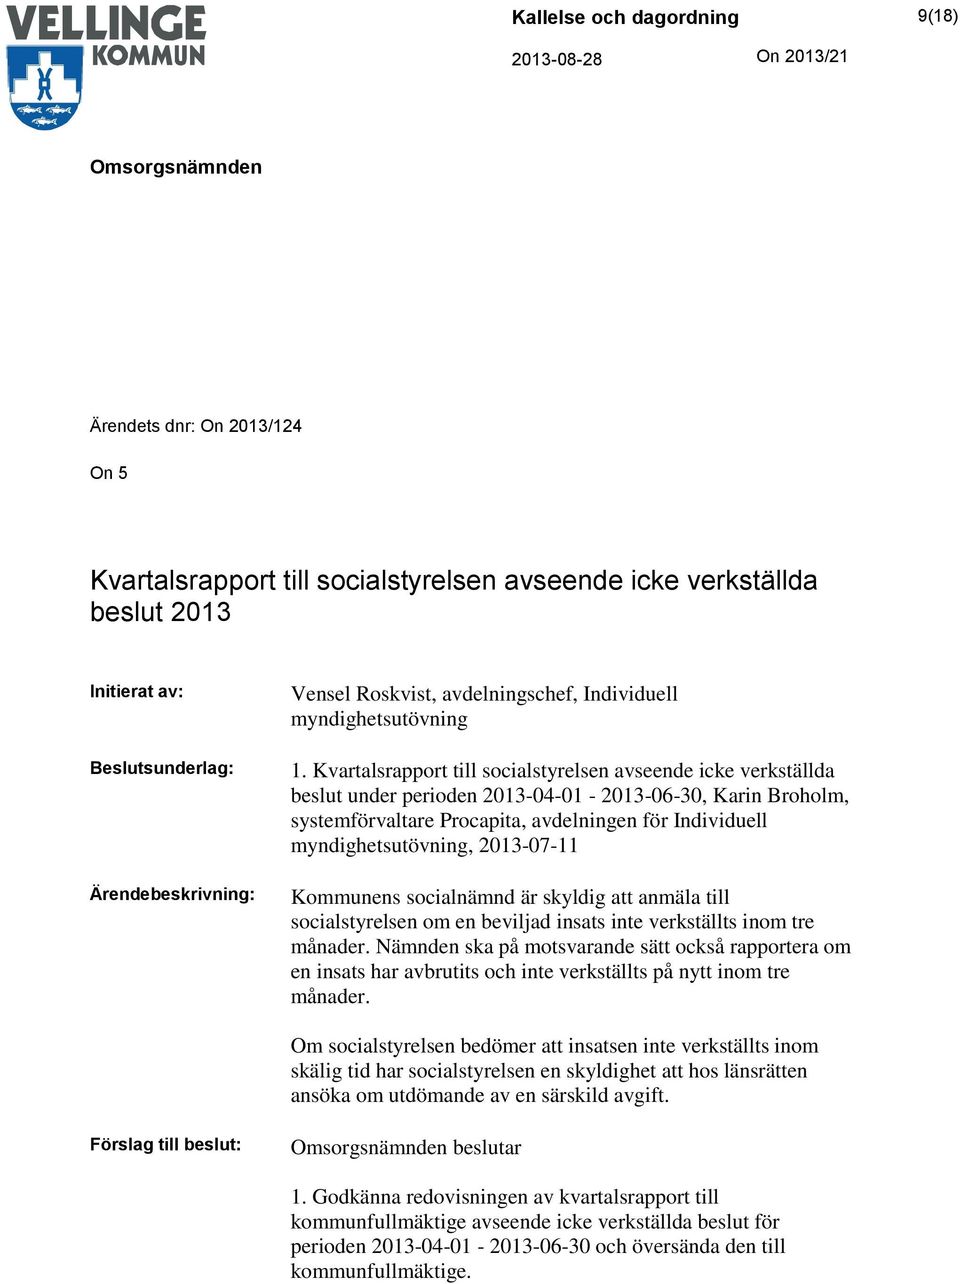 Kvartalsrapport till socialstyrelsen avseende icke verkställda beslut under perioden 2013-04-01-2013-06-30, Karin Broholm, systemförvaltare Procapita, avdelningen för Individuell myndighetsutövning,